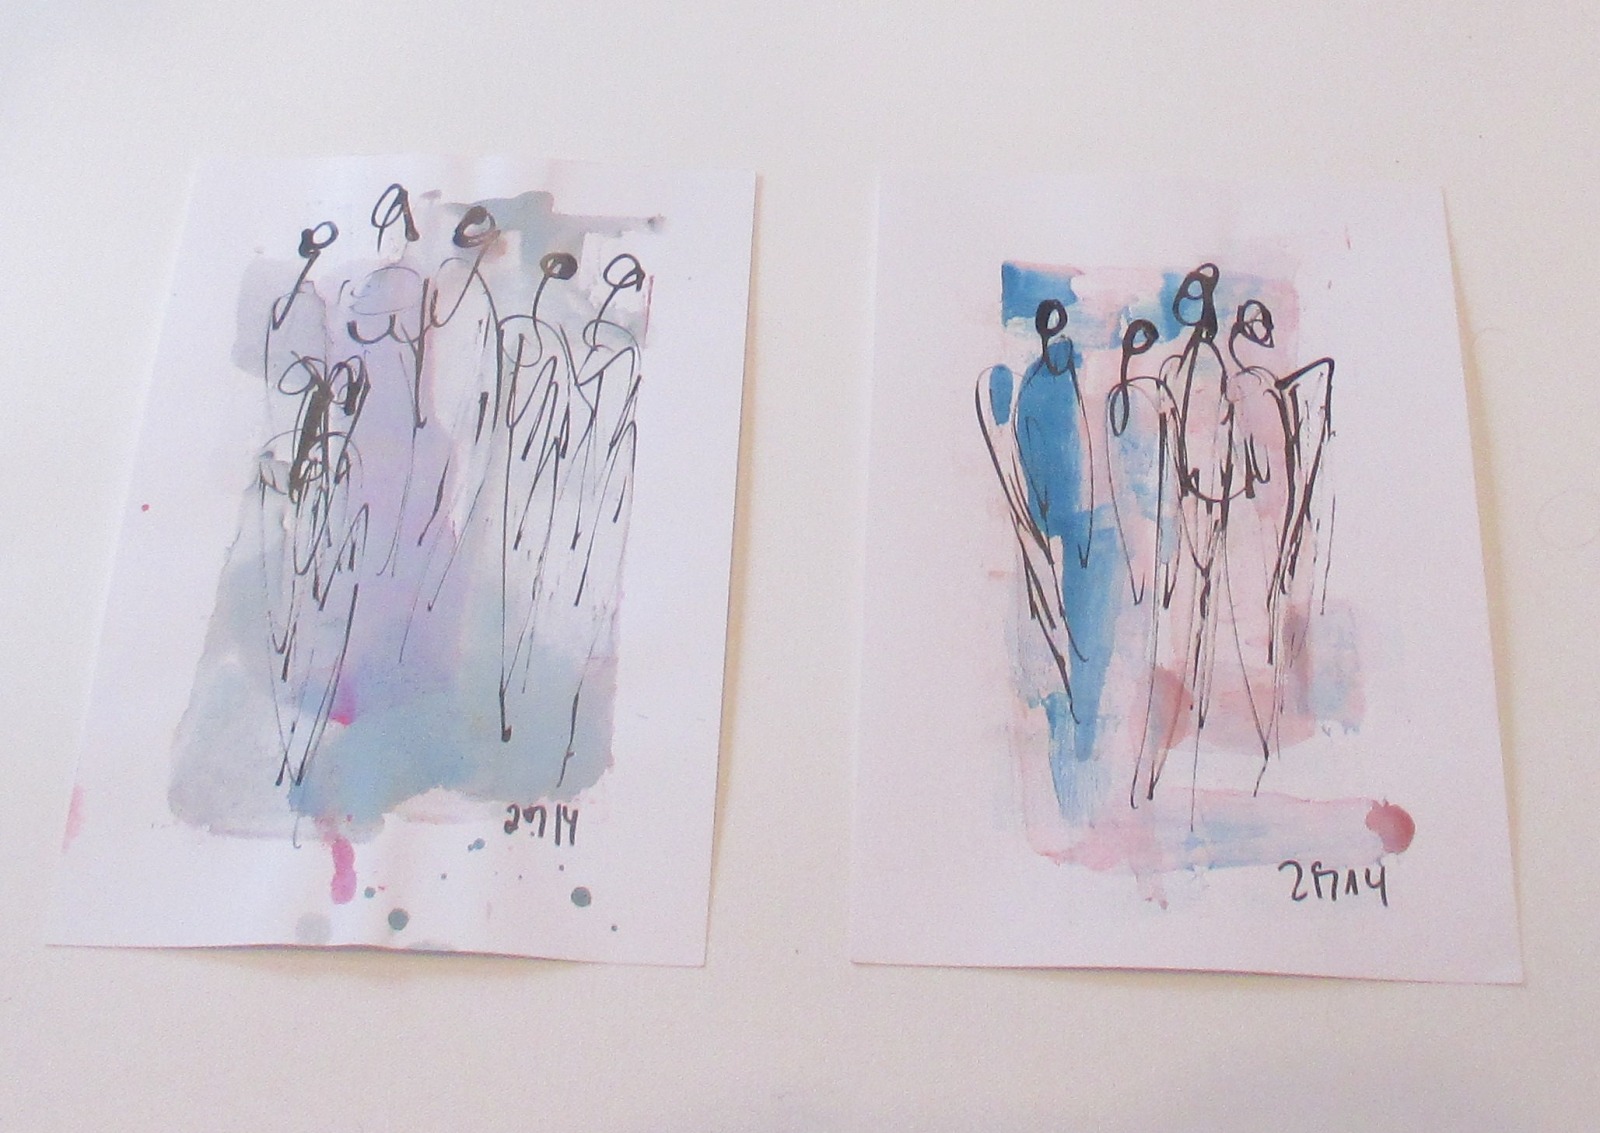 Engel und Frauen Pastell blau rose 2 x 30x21 Original Feder-Zeichnungen Aquarell Tusche 2